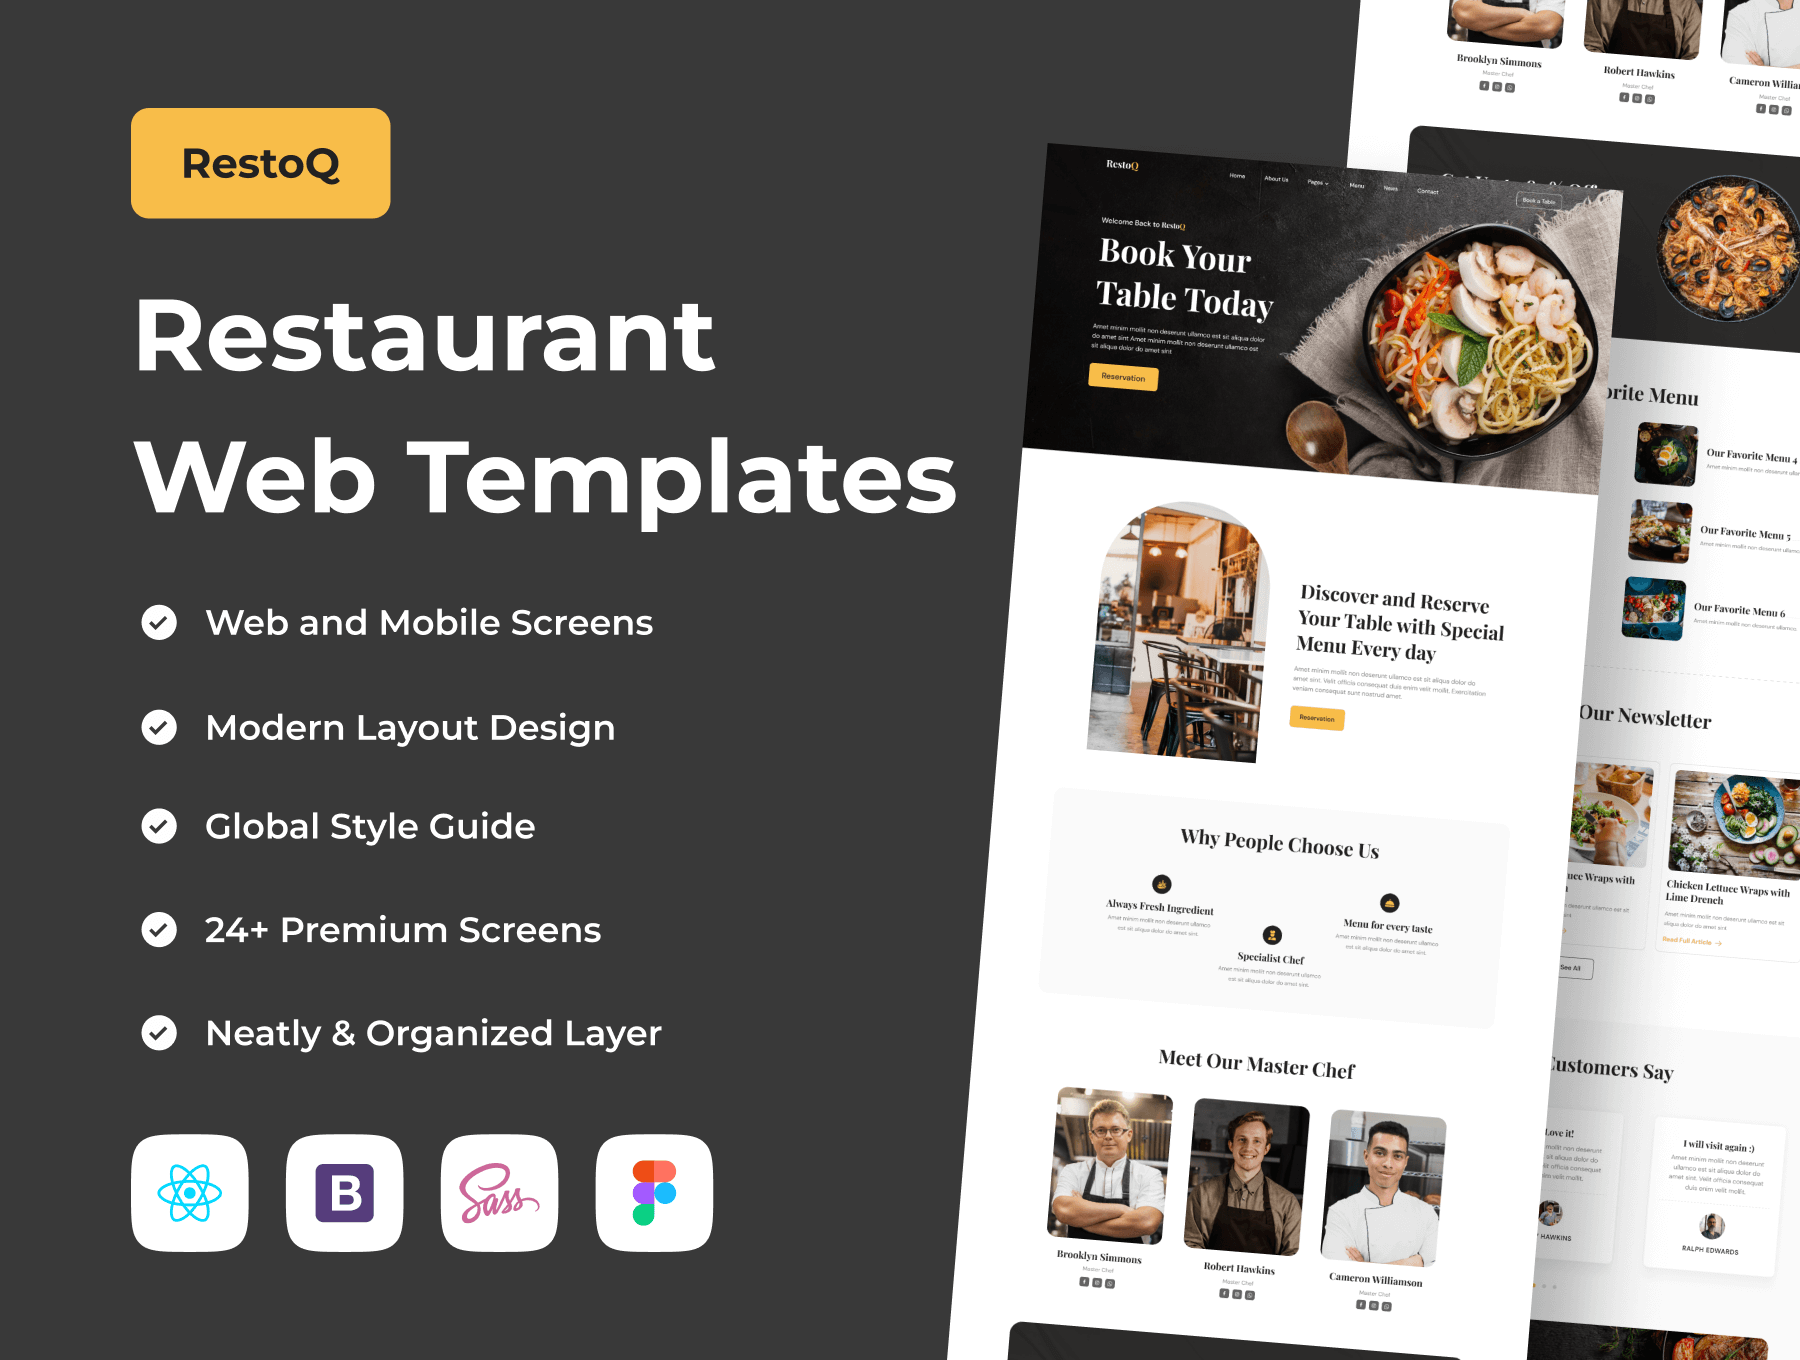 餐厅网络模板素材下载RestoQ – Restaurant Web Templates插图